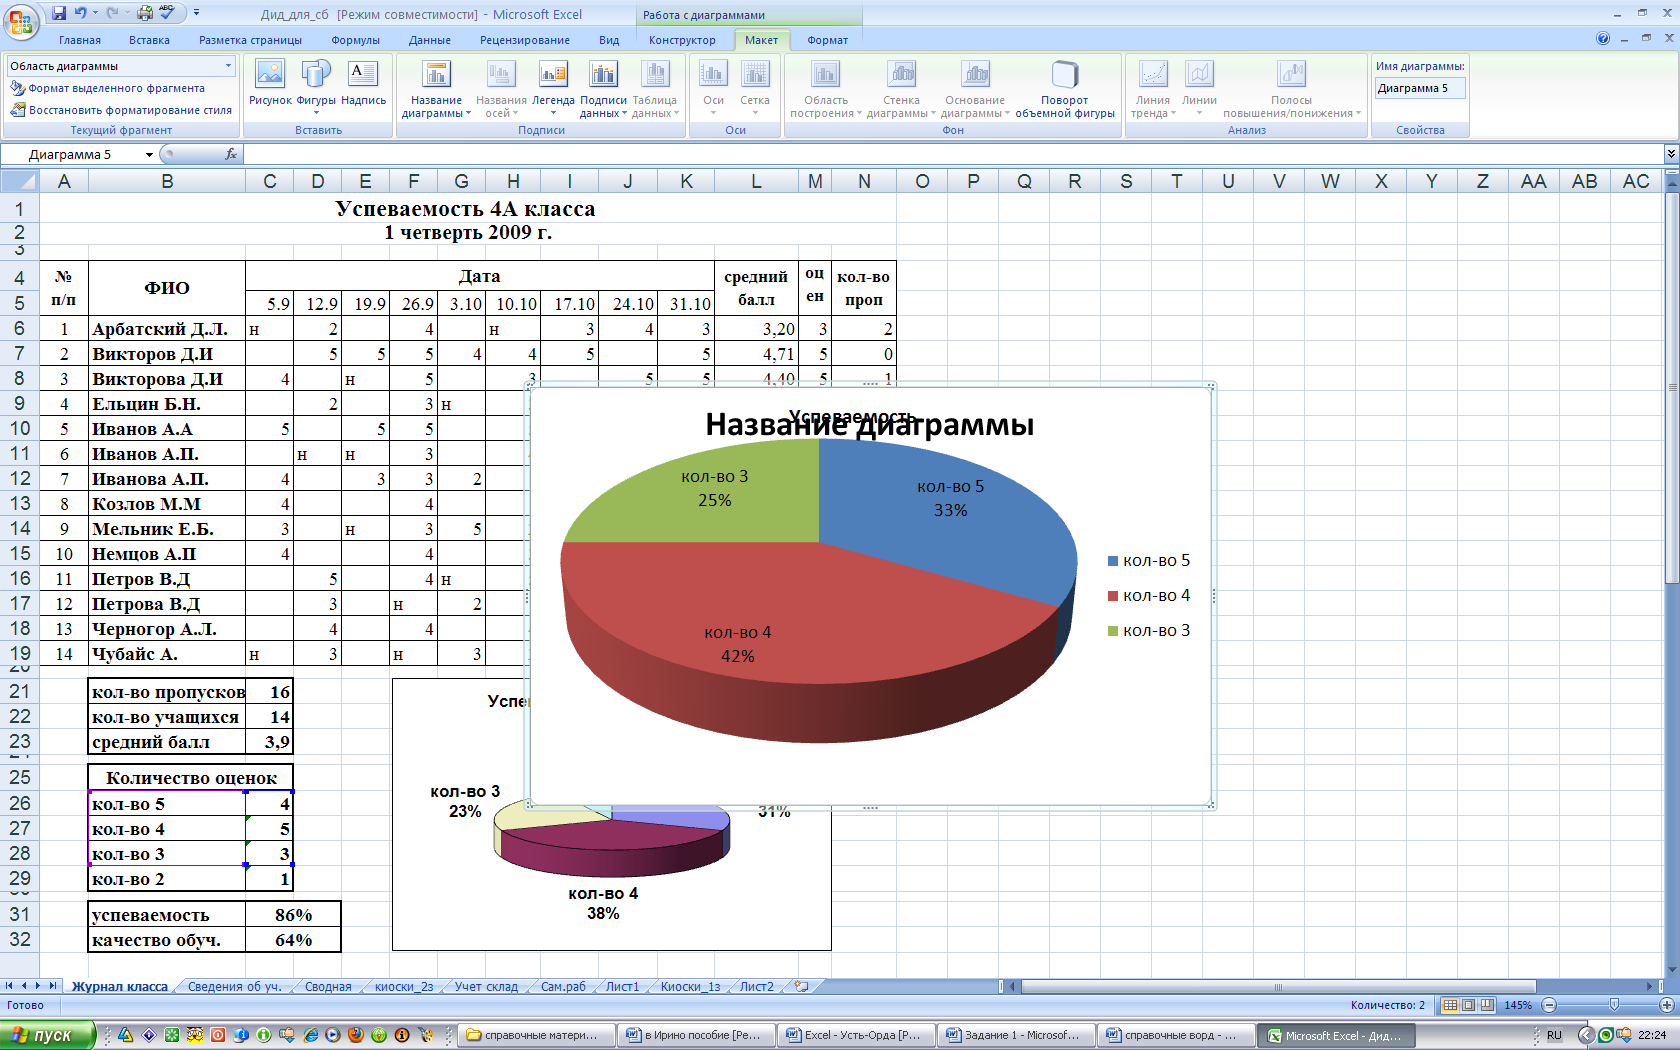 Методическая разработка урока по информатике и ИКТ в ПД по теме Использование электронных таблиц Microsoft Office Excel 2007 в деятельности учителя начальных классов